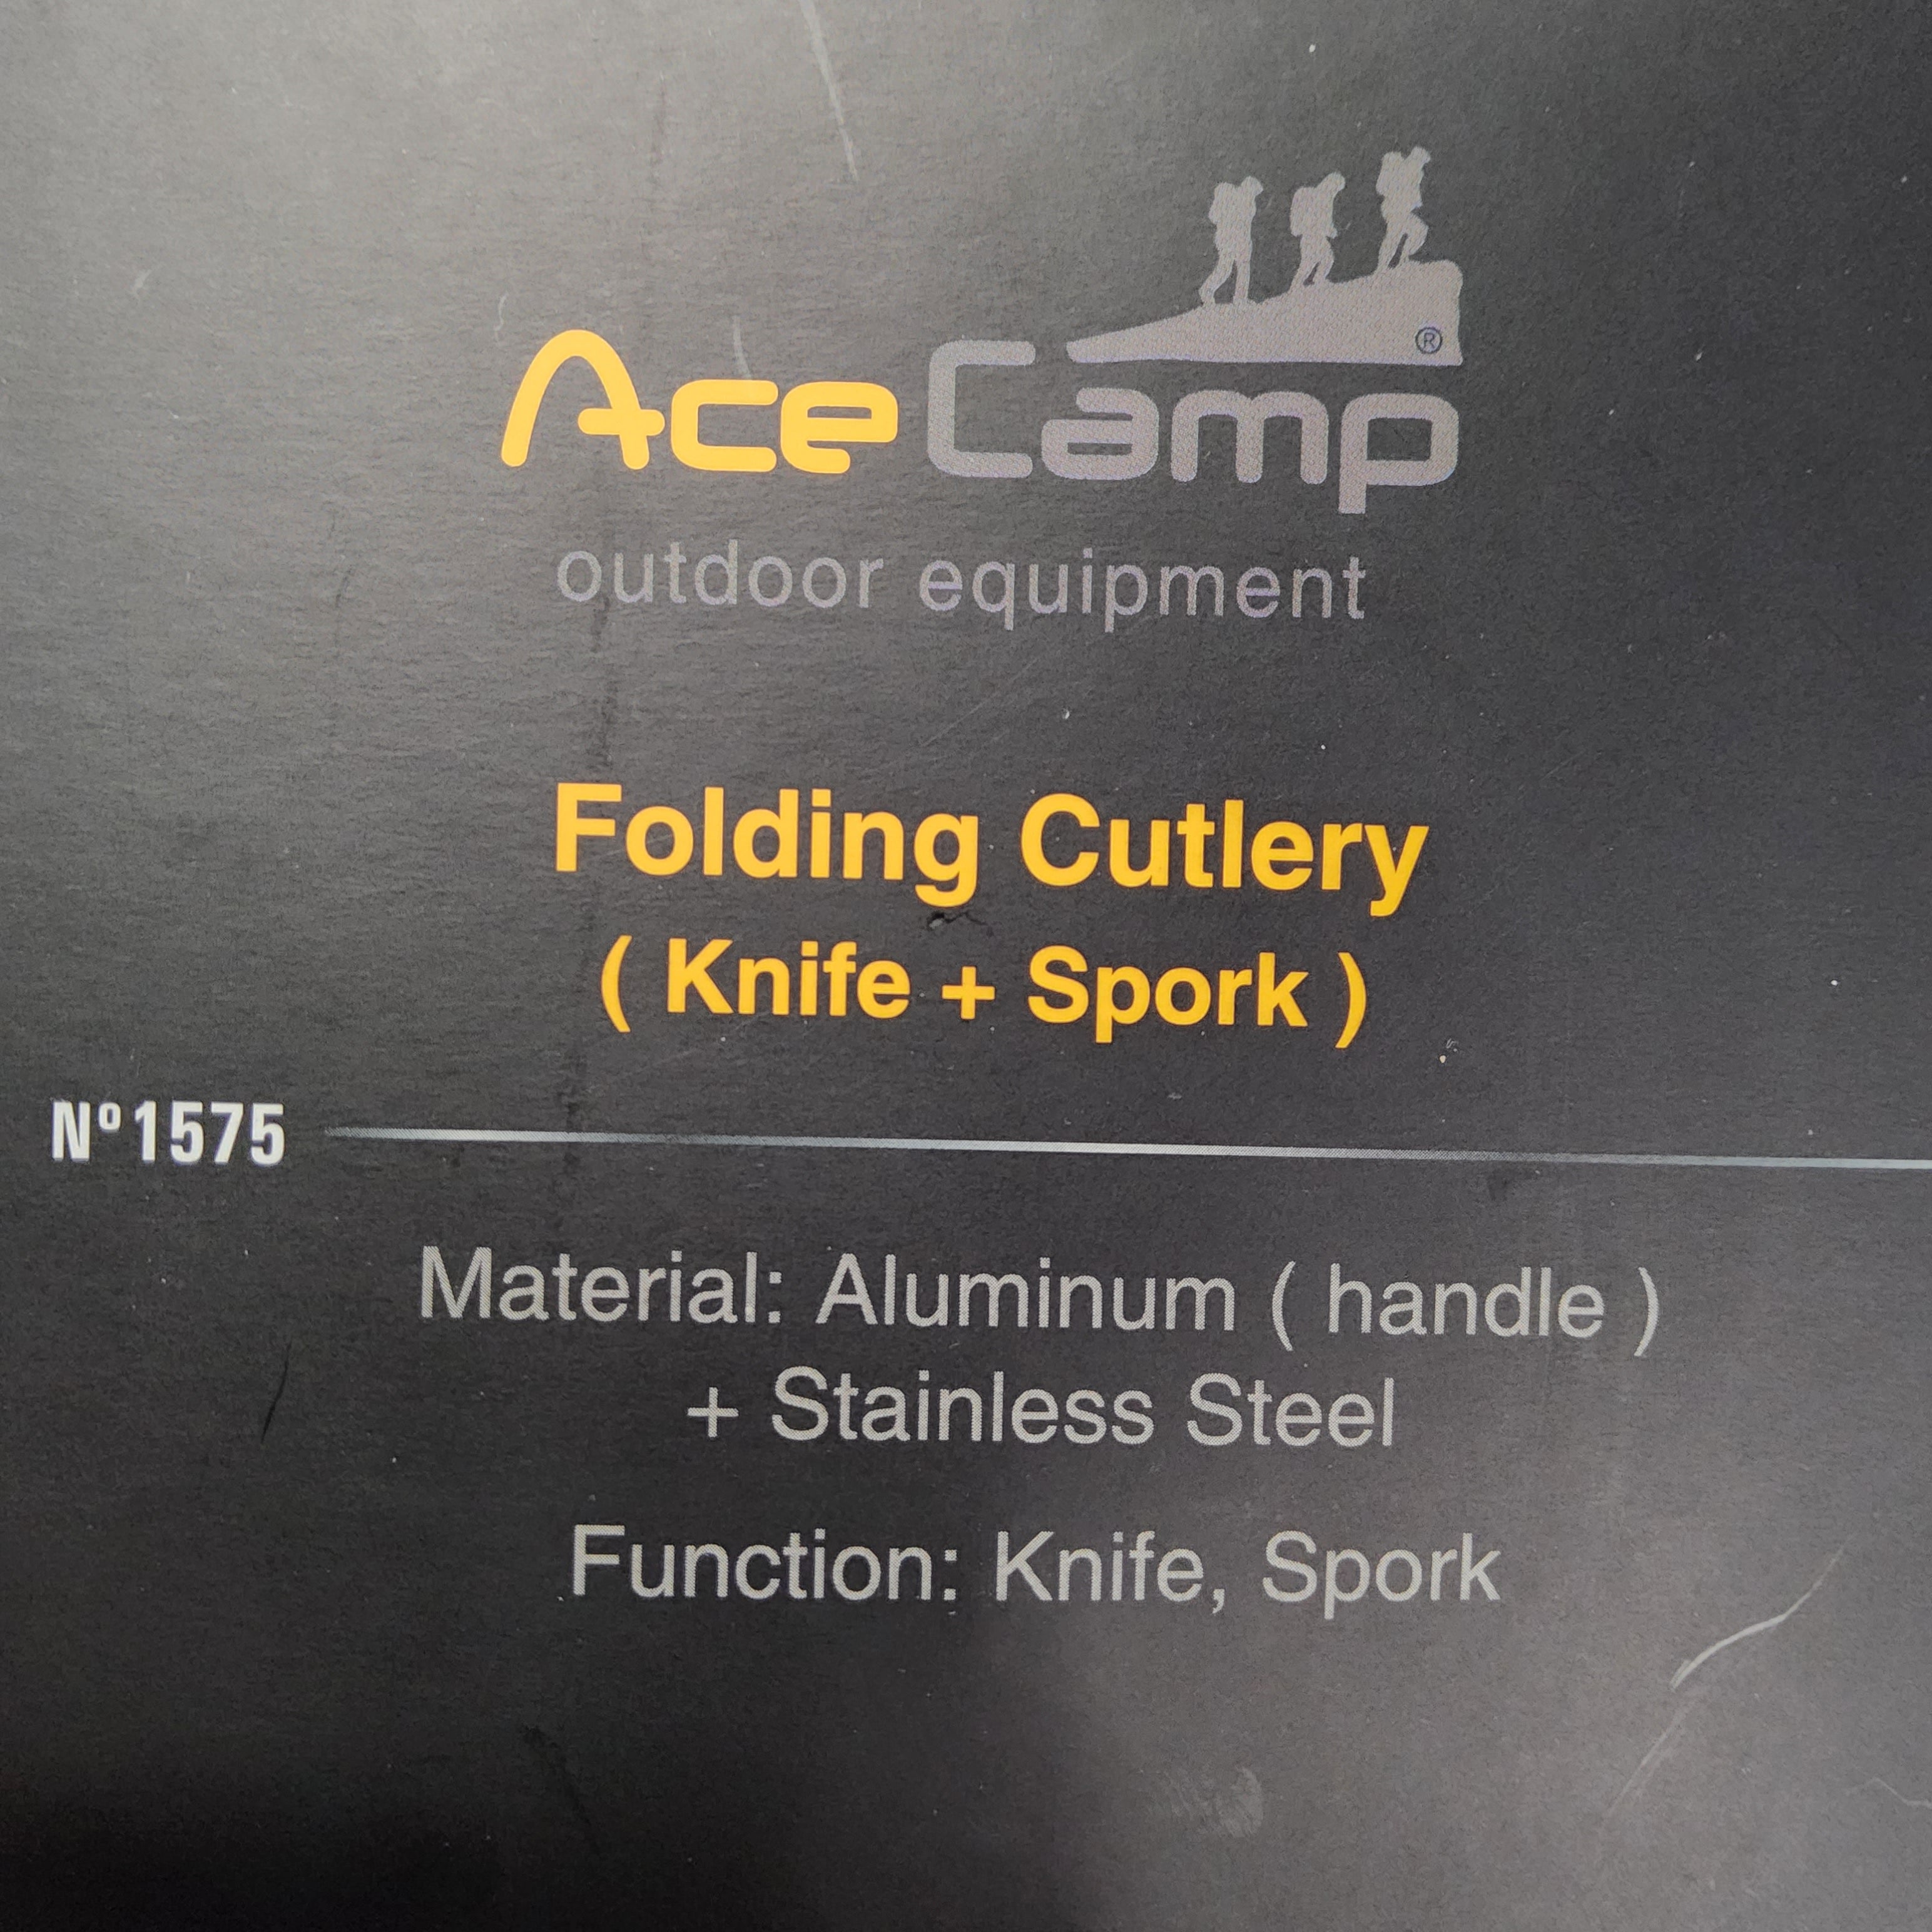 Ace Camp Folding Cutlery #1575